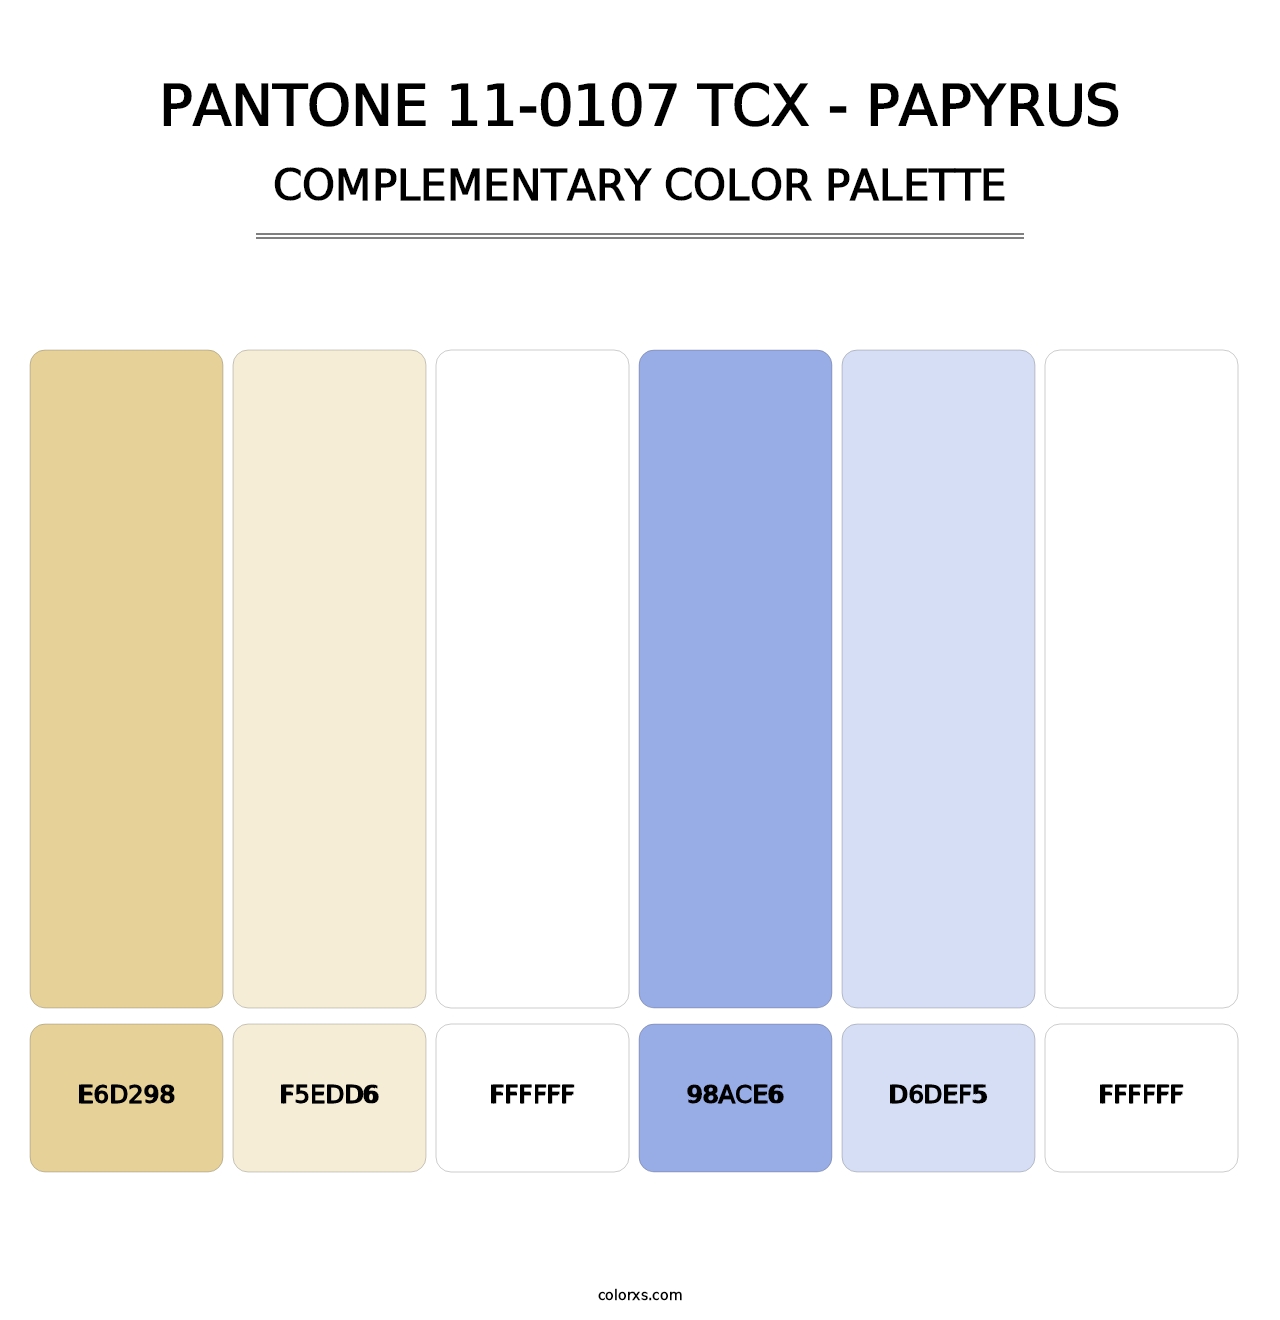 PANTONE 11-0107 TCX - Papyrus - Complementary Color Palette